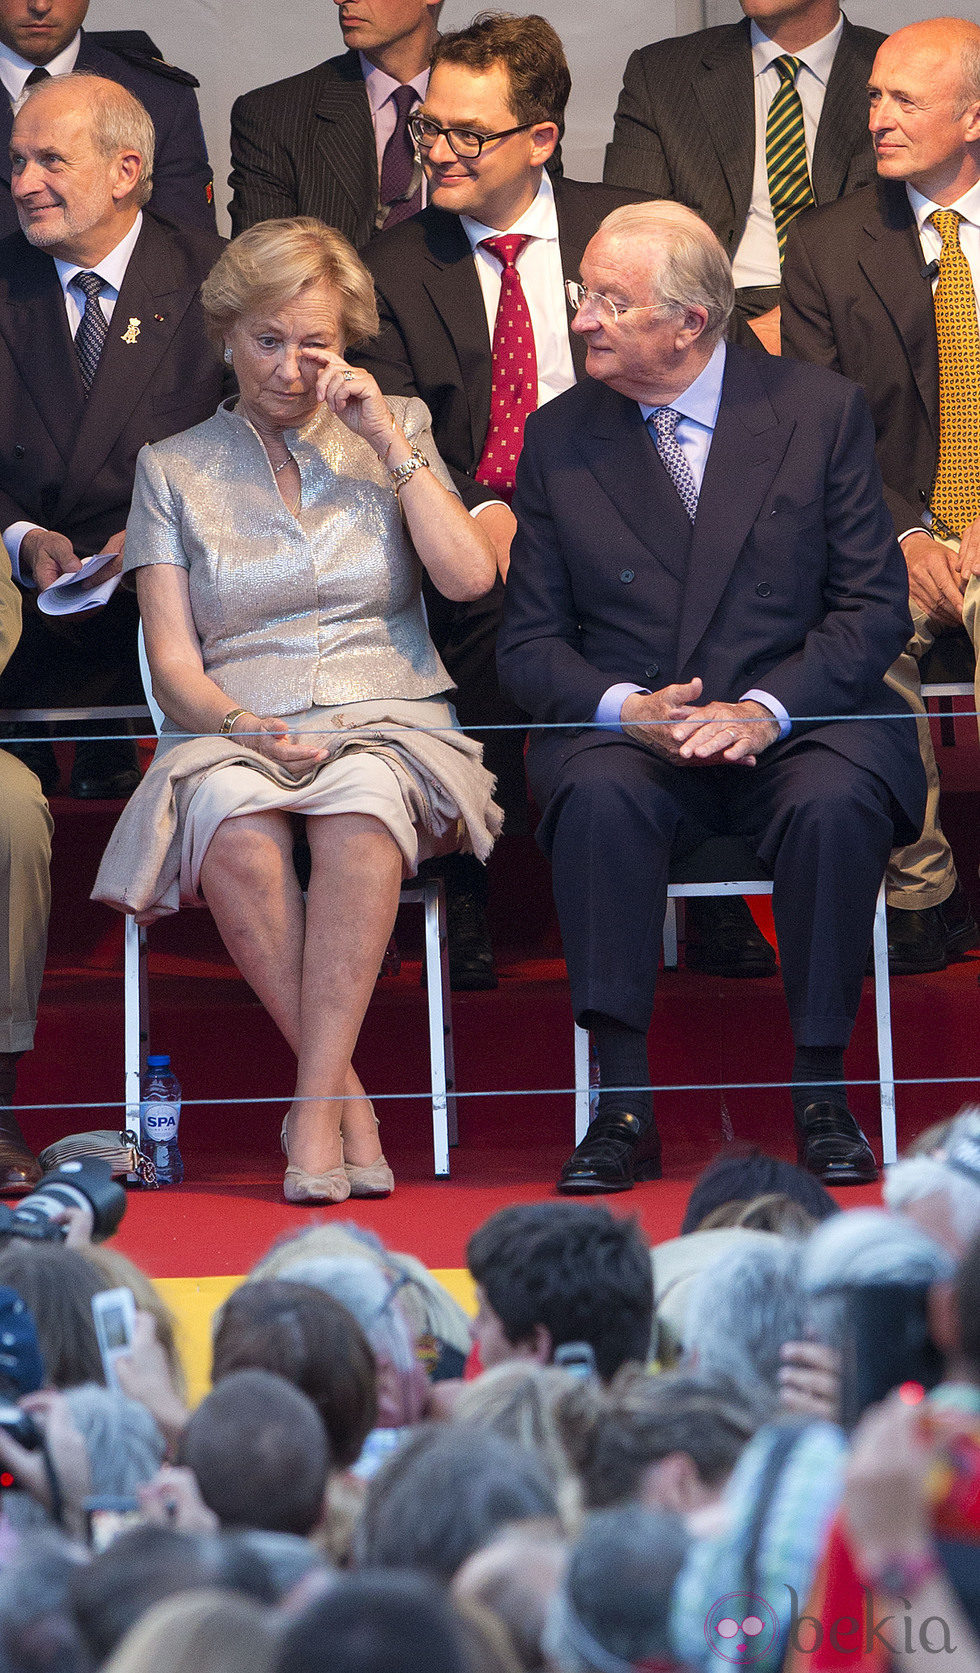 La reina Paola de Bélgica se emociona en su último acto público